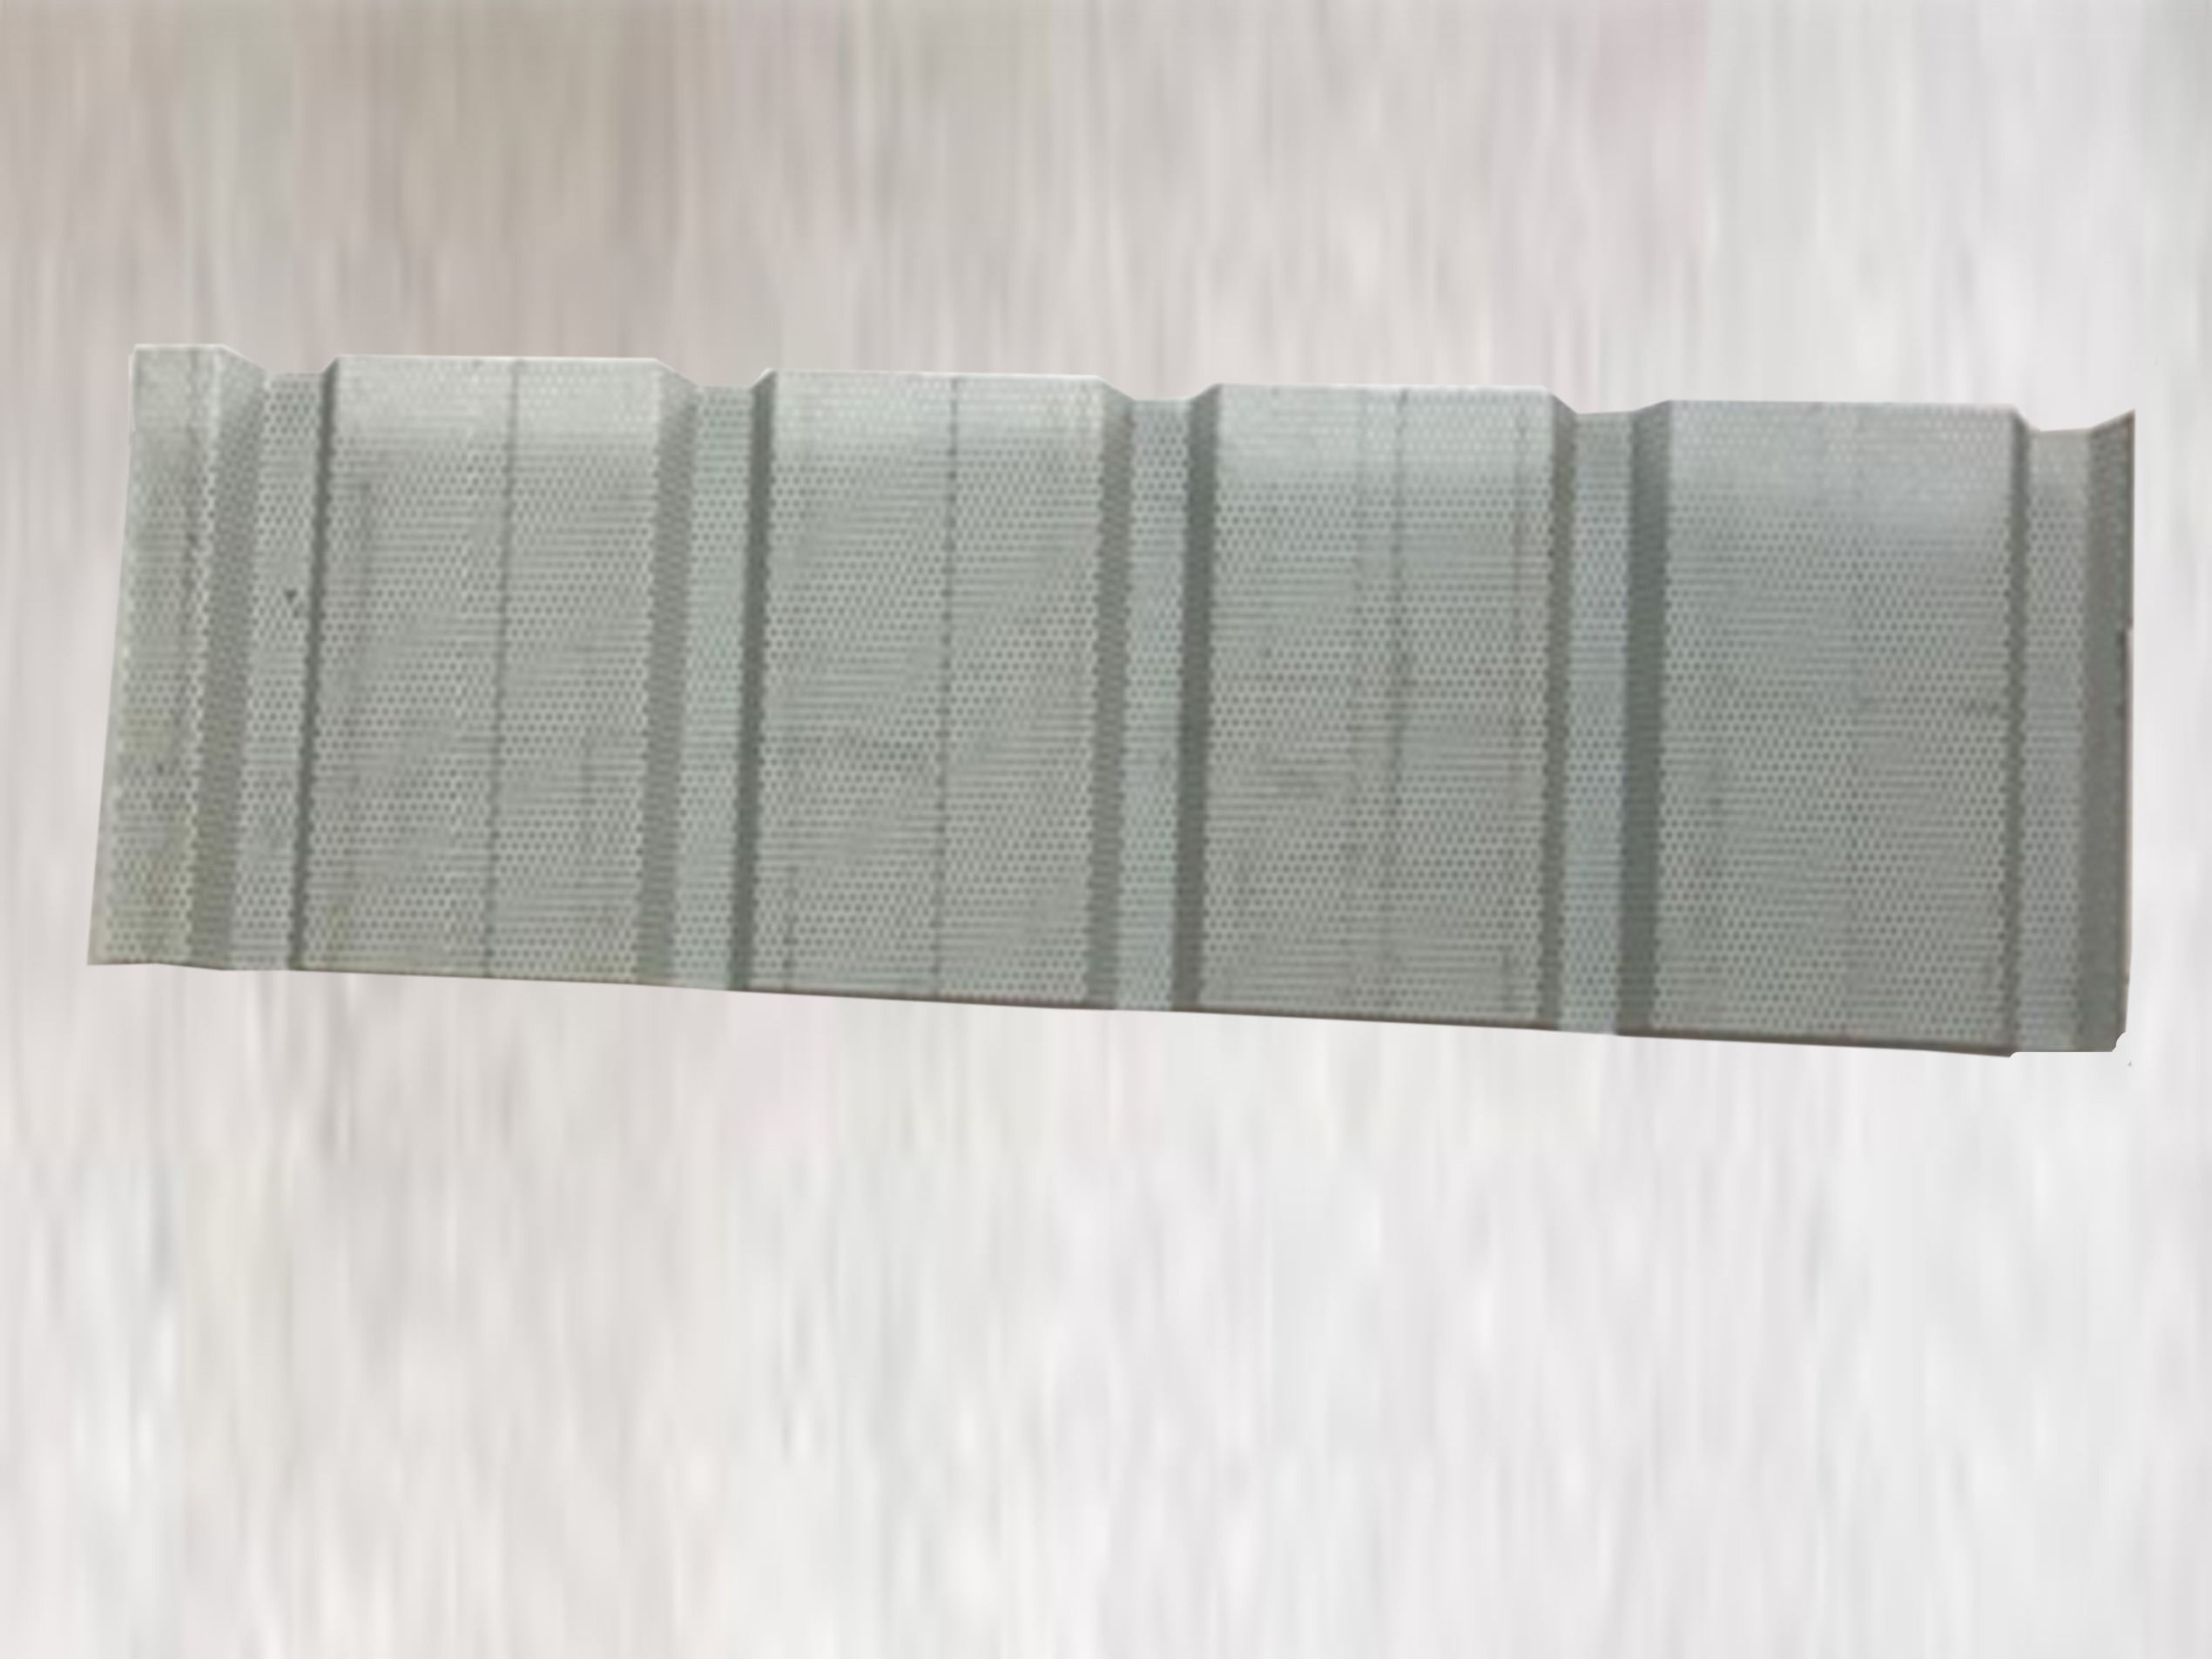 HV-310小波浪板 铝镁锰穿孔板 铝镁锰板颜色可订制